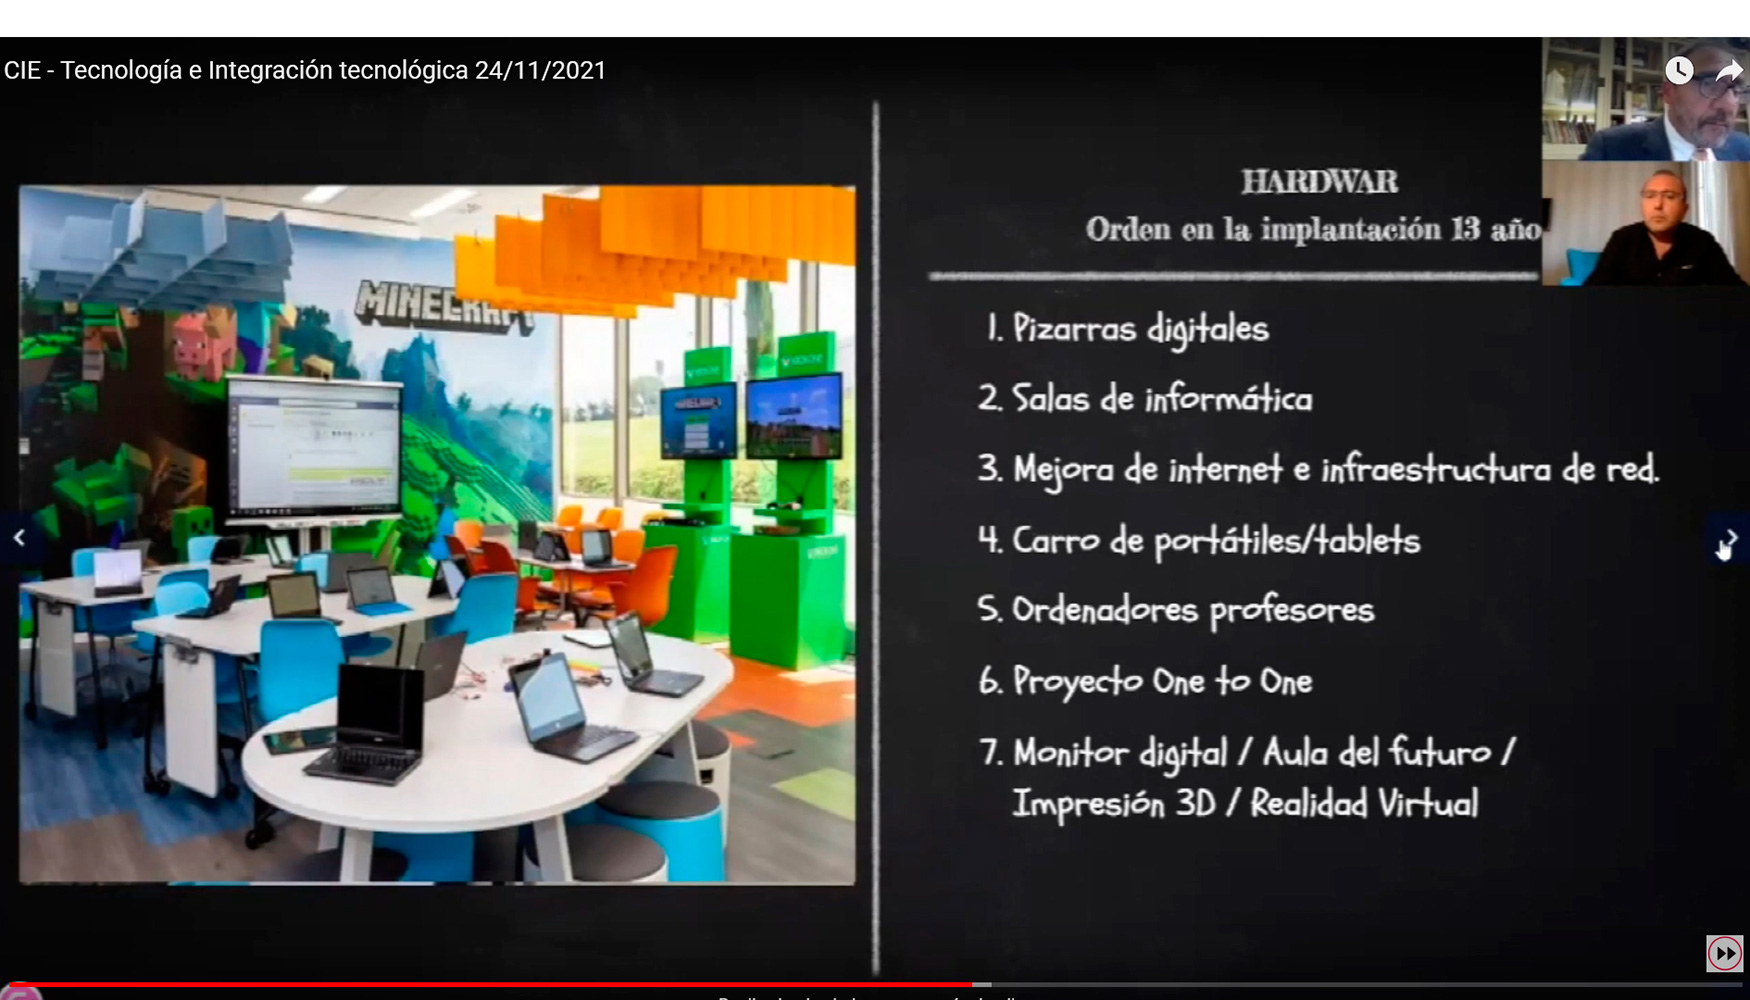 El proyecto de innovacin del Colegio Arula, hasta la actualidad, se basa en estos siete puntos resumidos en la pantalla...